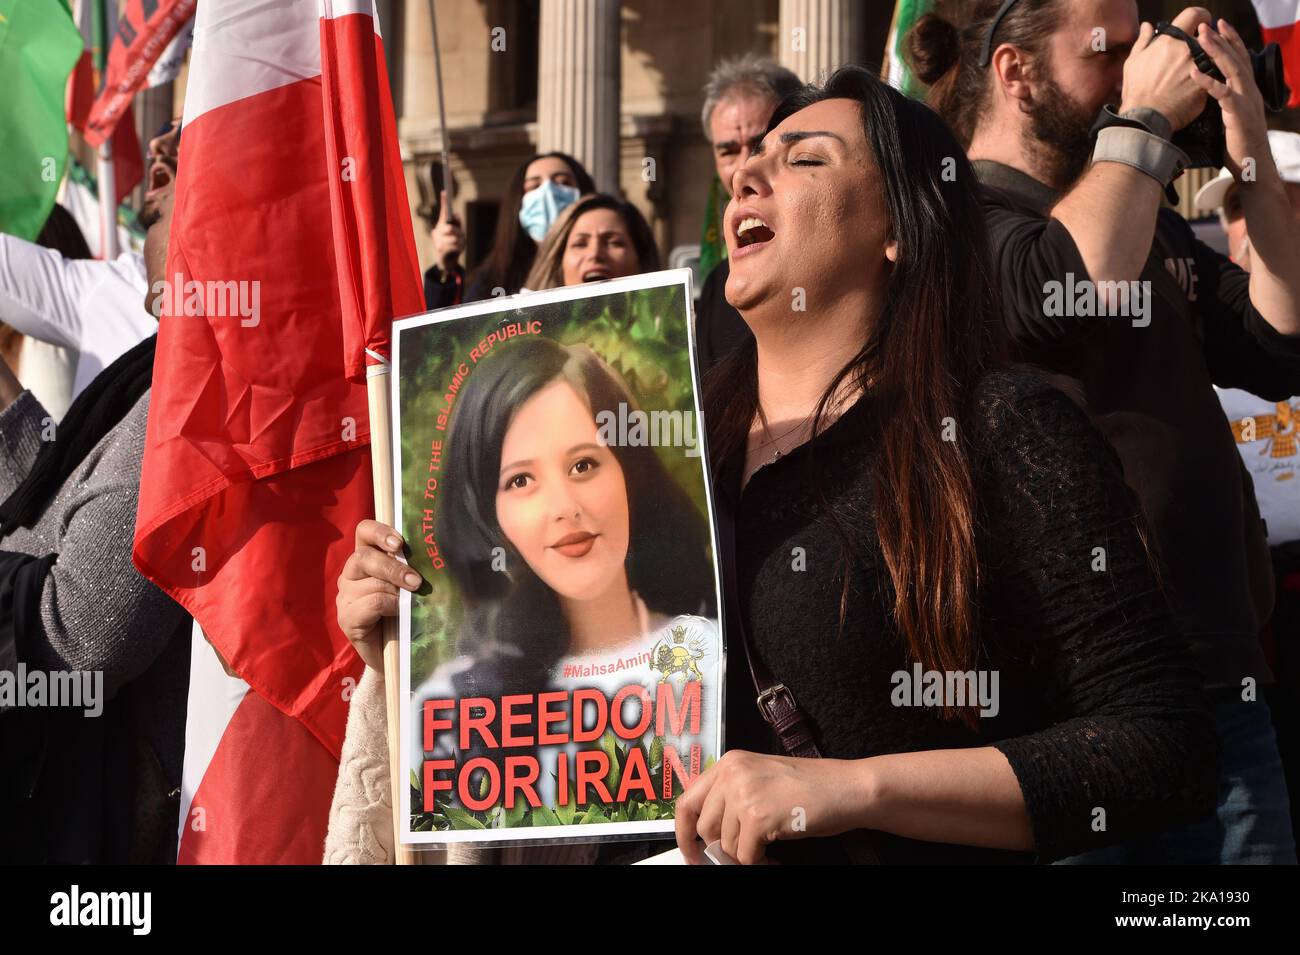 I manifestanti partecipano a una manifestazione a Trafalgar Square in solidarietà con la crescente rivolta per la libertà in Iran, per la morte di Mahsa Amini a seguito del suo arresto da parte della polizia morale iraniana. Mahsa Amini è stato ucciso in custodia il 16 settembre, dopo il suo arresto per presunta violazione delle leggi iraniane per le donne che indossavano hijab, velo e abiti modesti. Foto Stock